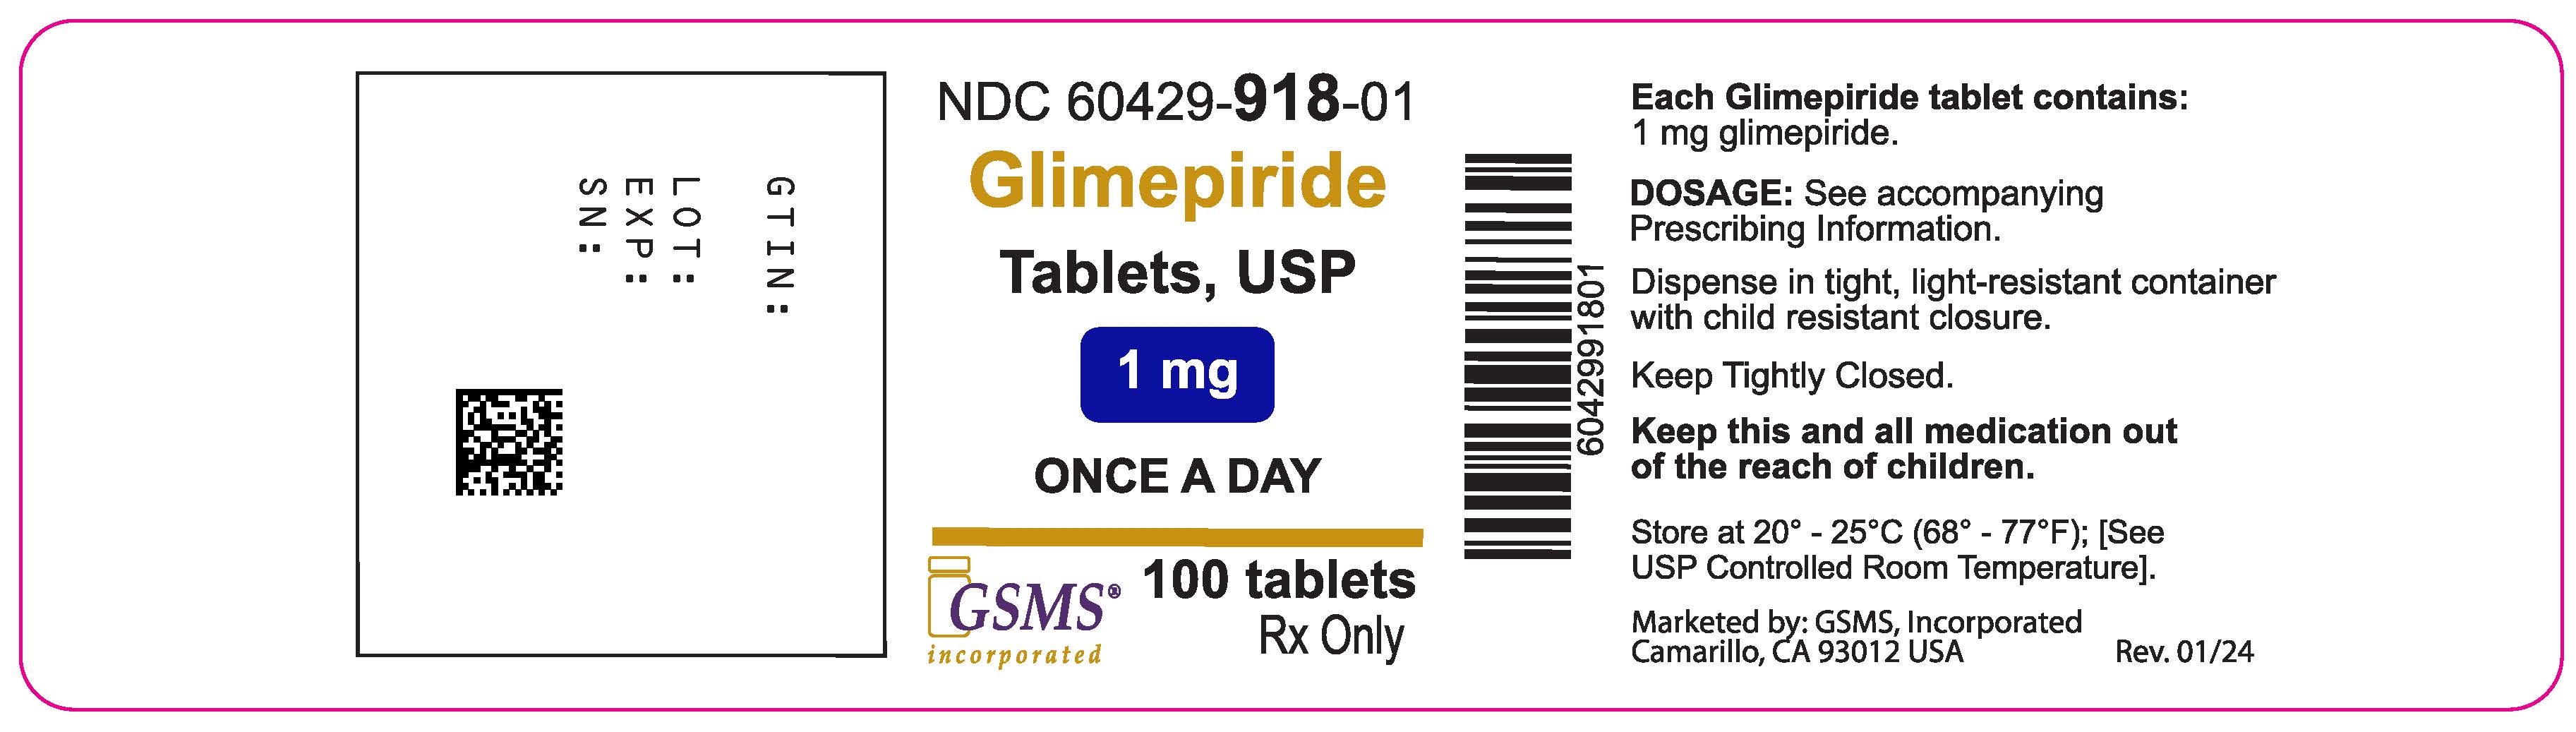 60429-918-01OL - Glimepiride 1 mg - Rev. 0124.jpg